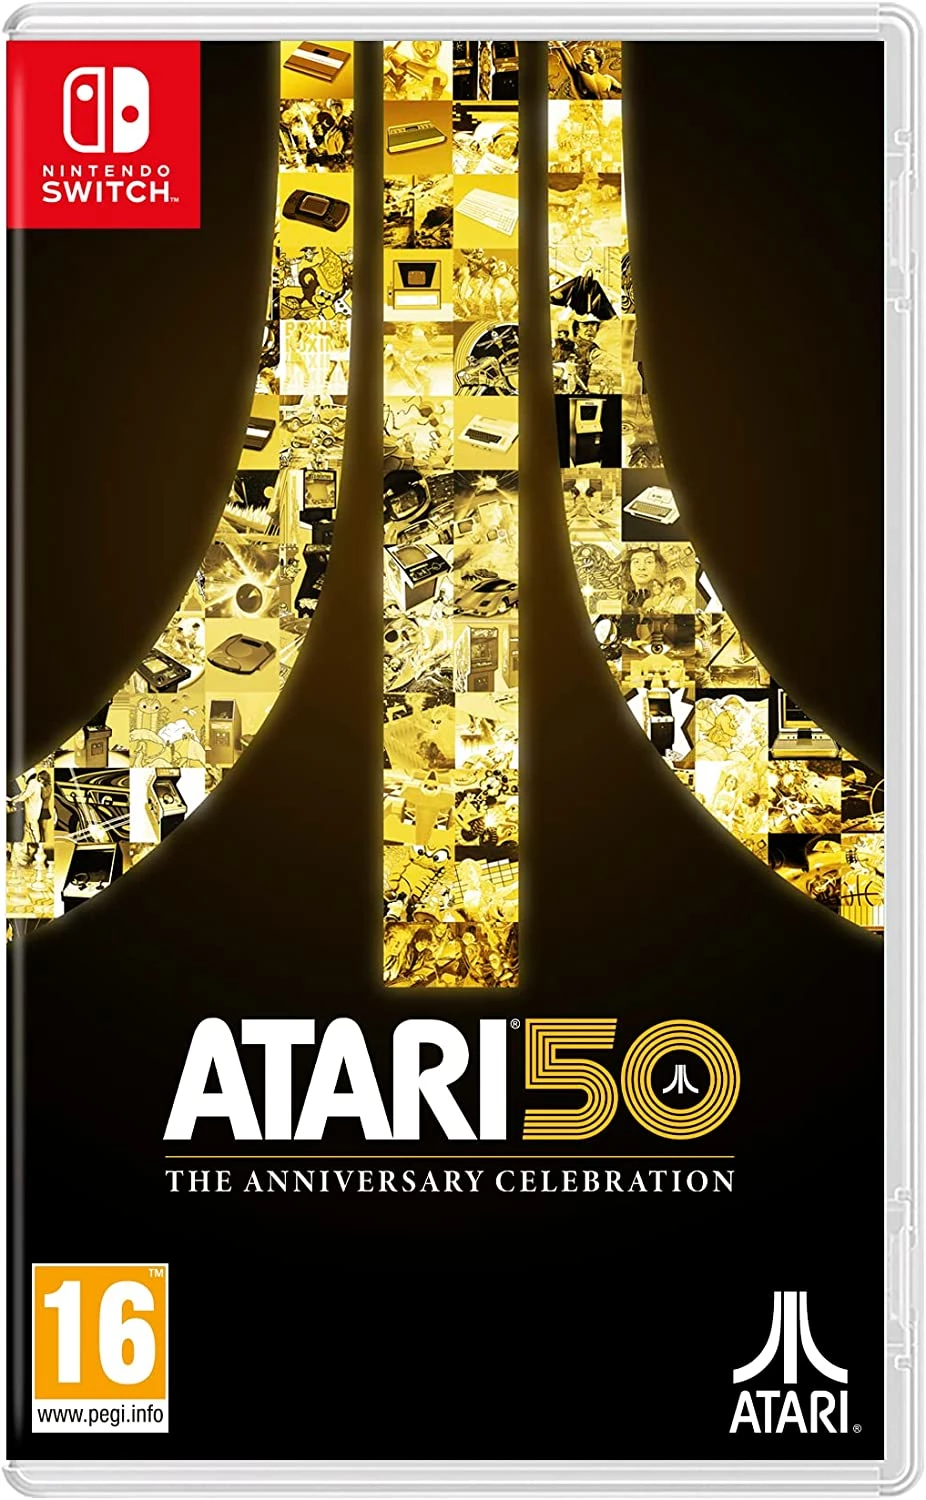 Atari 50: The Anniversary Celebration (Switch), Atari